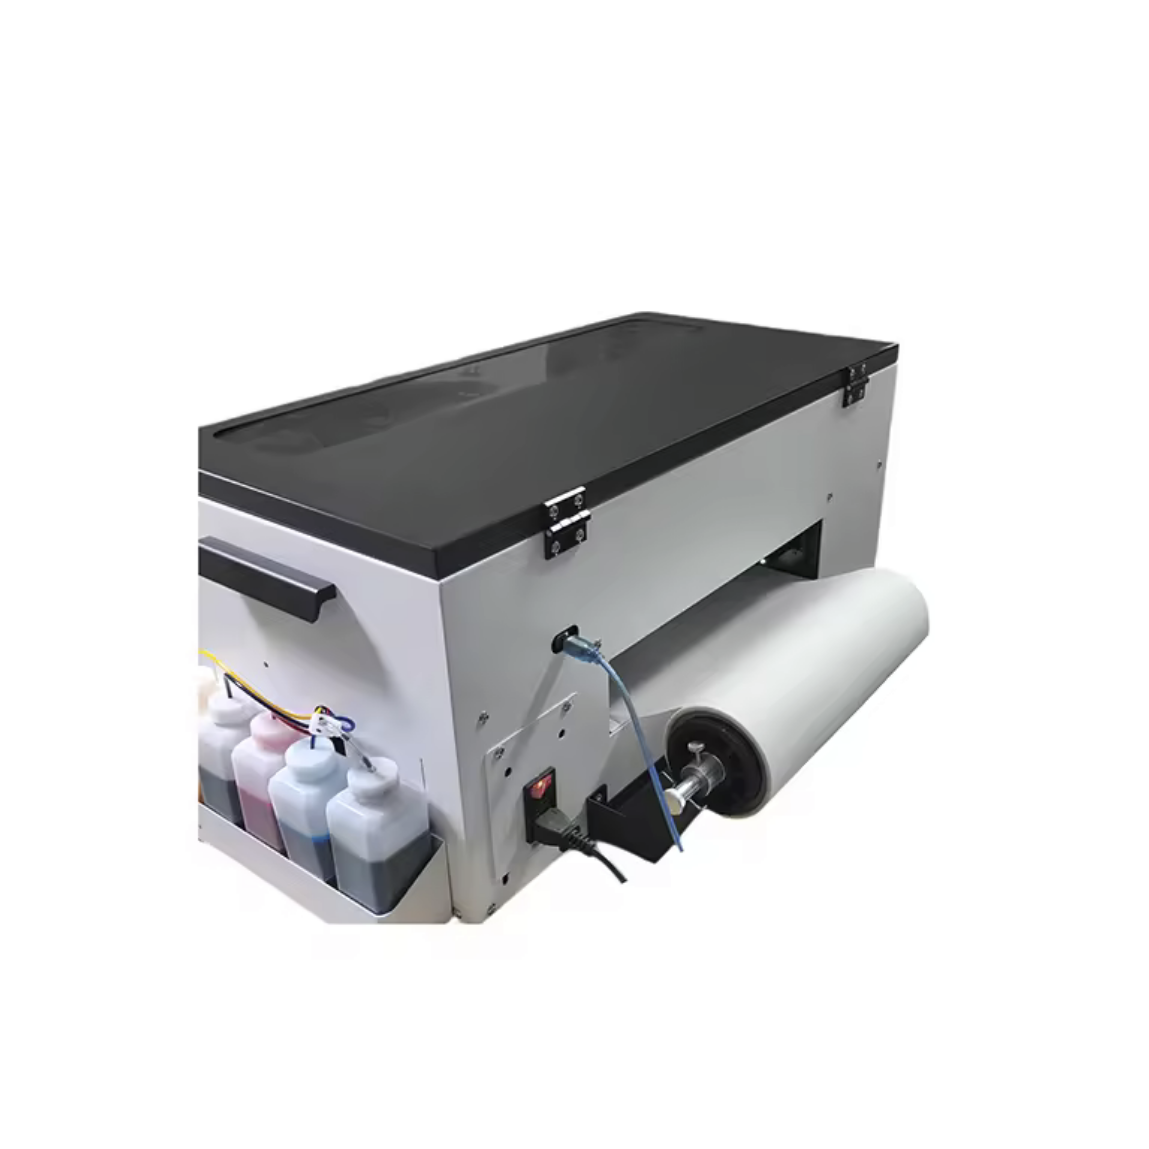 DTF330-Mini / DTF- Drucker für den Textildruck Transferdruck Druckformat DIN A3